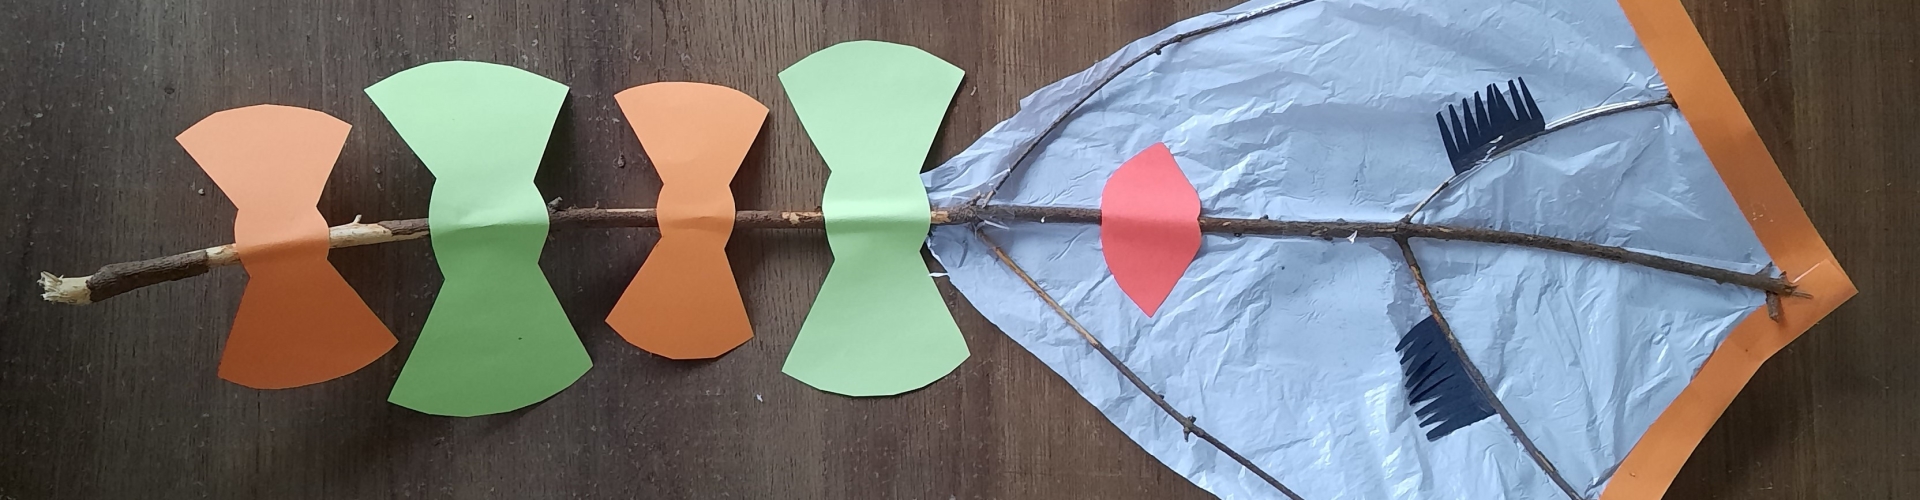 Een decoratieve vlieger gemaakt van takken en oud plastic en restjes knutselpapier waarvan ogen, een mond en strikjes zijn gemaakt